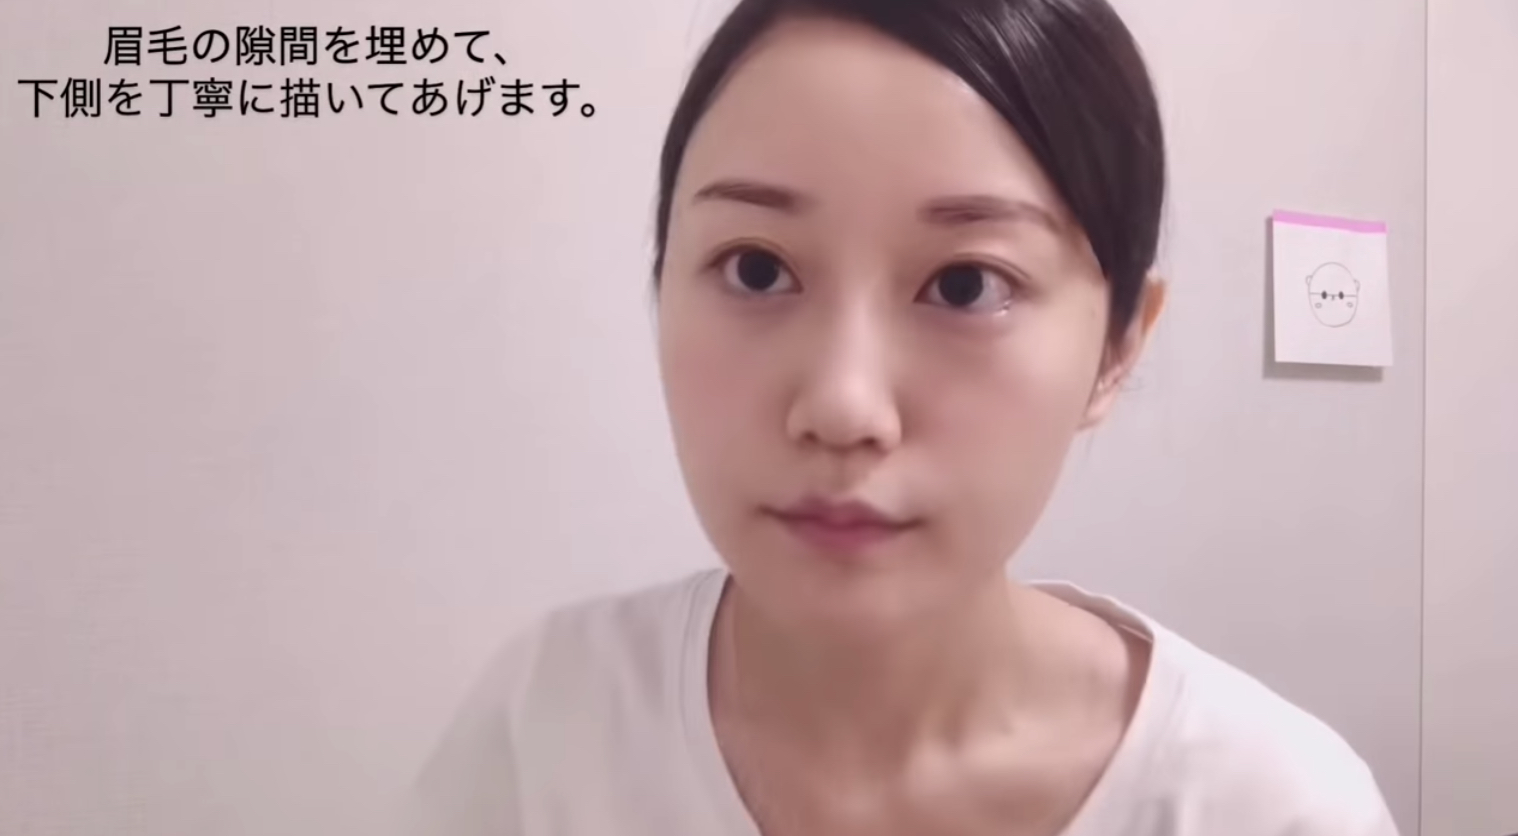 小倉唯さんがメイク動画を公開 すっぴん風メイク 簡単ヘアアレンジ を紹介されています にじめん